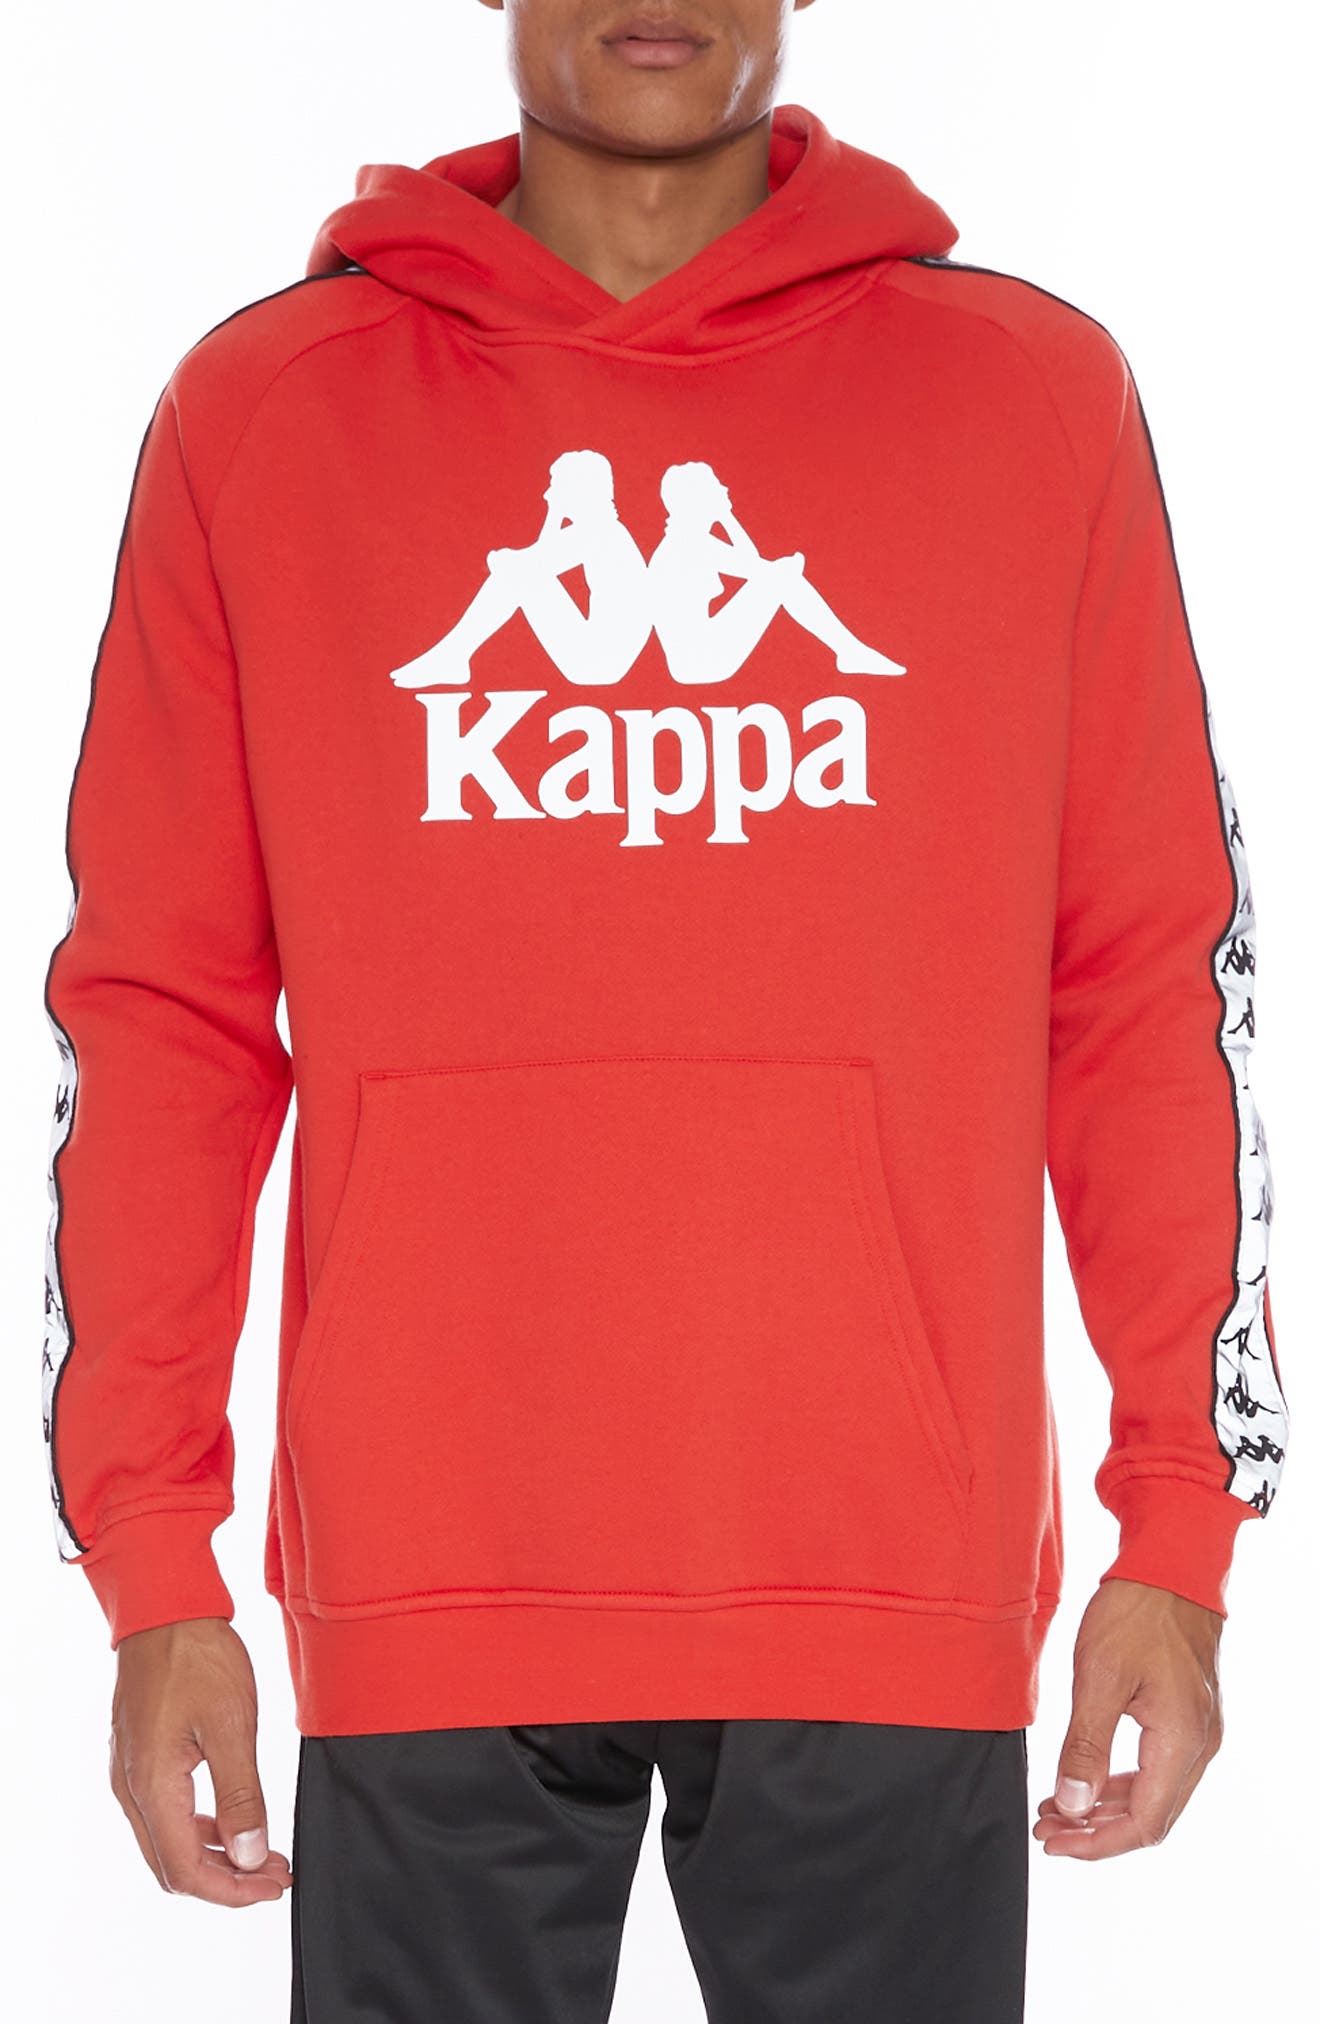 red kappa sweater